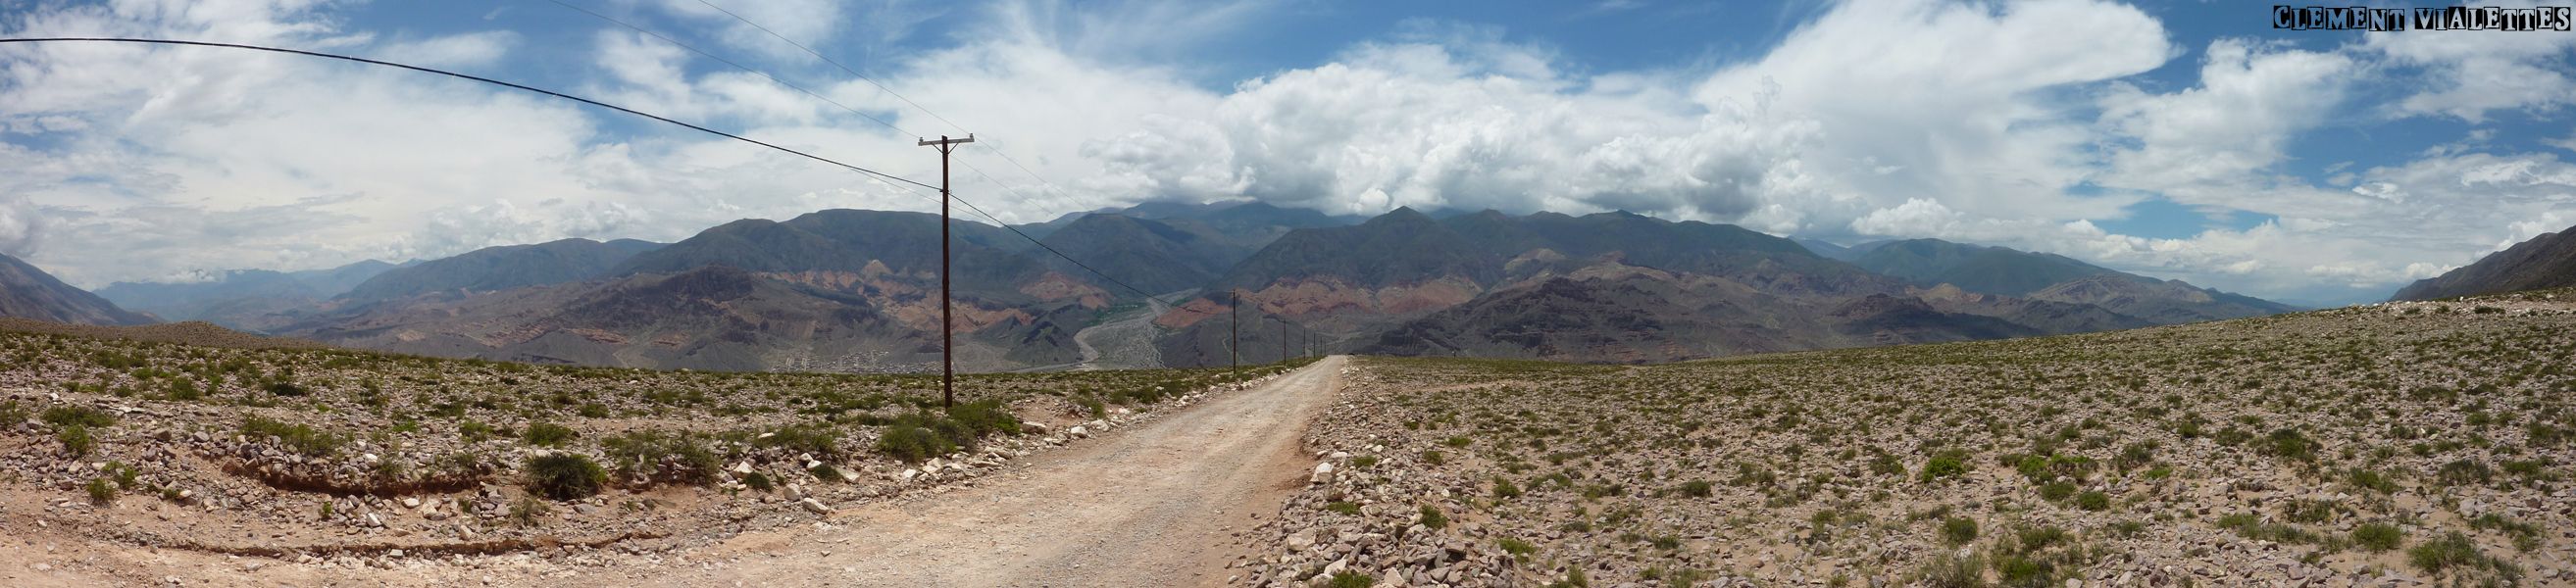 argentine tilcara panoramique